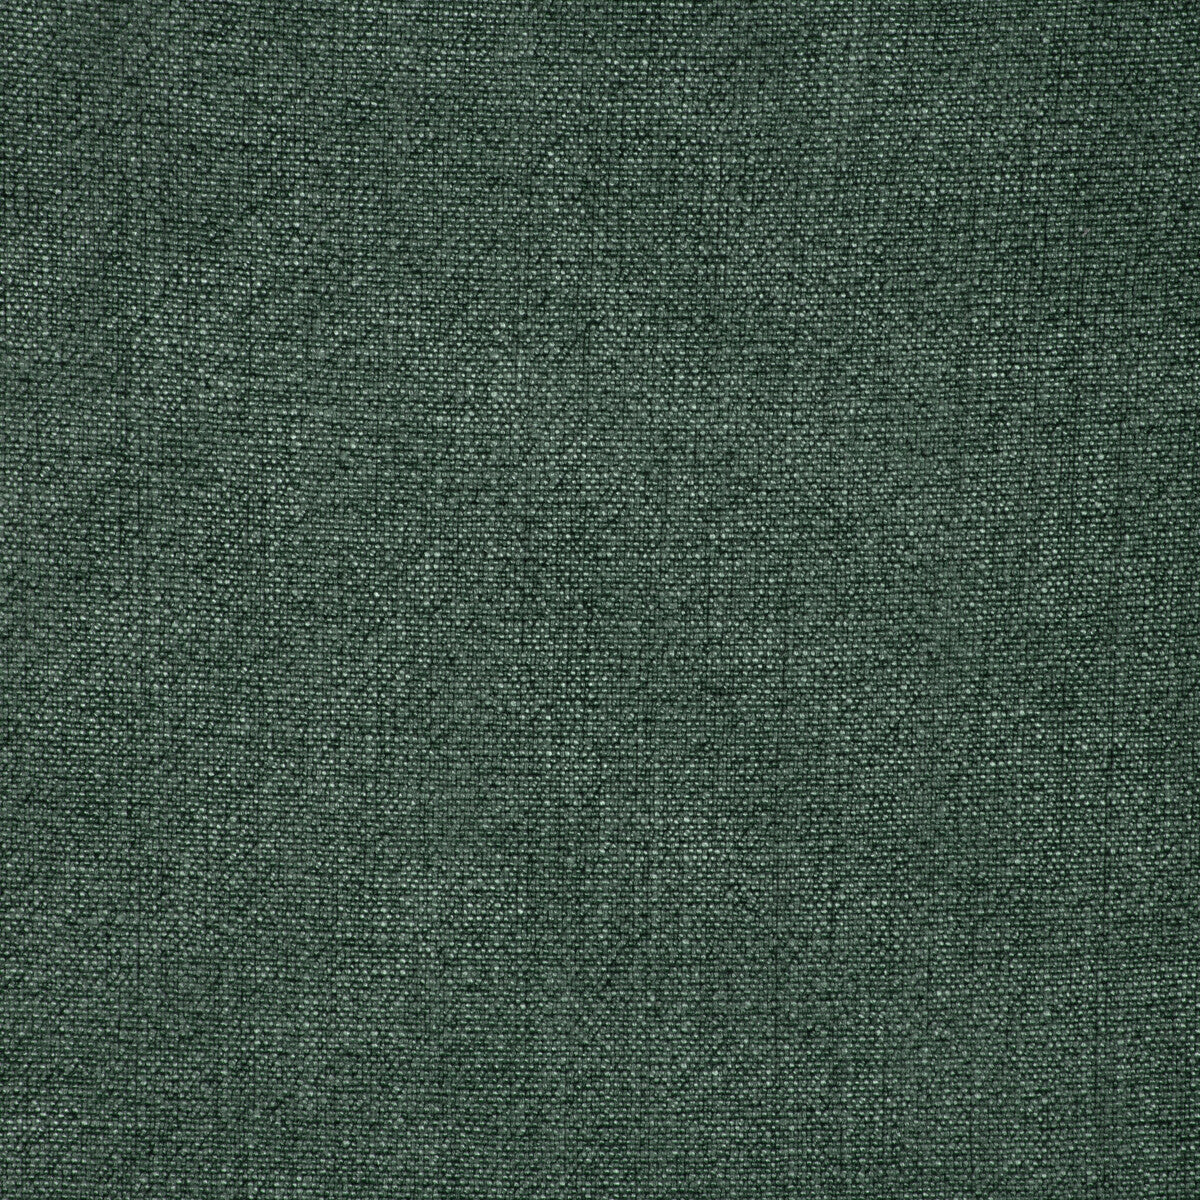 Kravet Basics fabric in 35189-33 color - pattern 35189.33.0 - by Kravet Basics